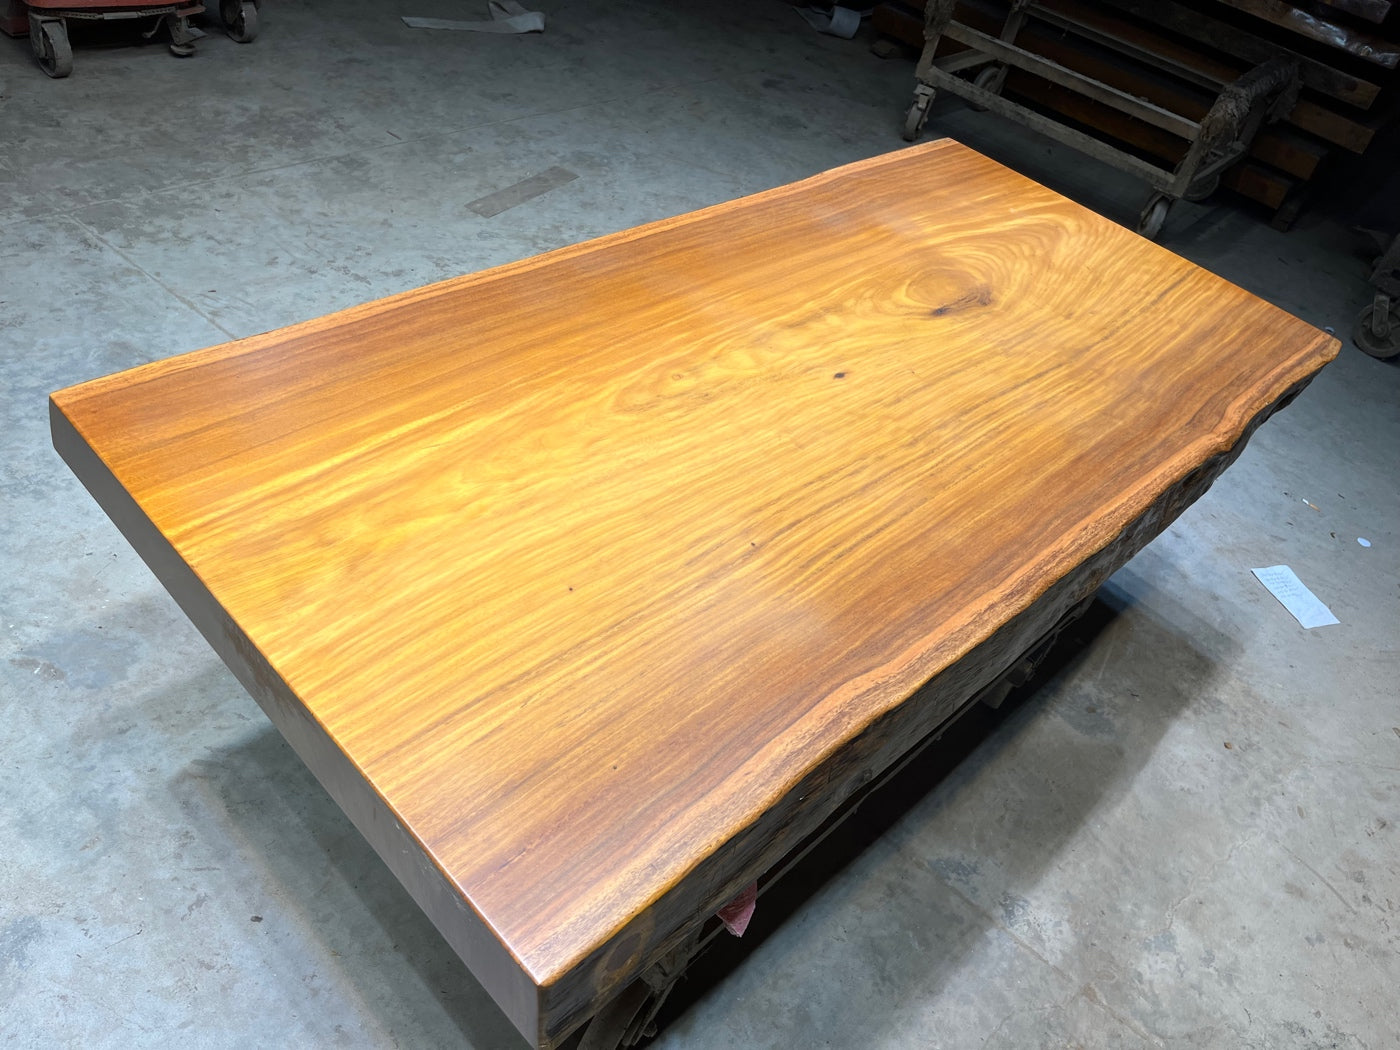 <tc>Tali wood</tc> patas de mesa de losa, <tc>Tali wood</tc> tablero de mesa, diseños de mesa de losa de madera de África